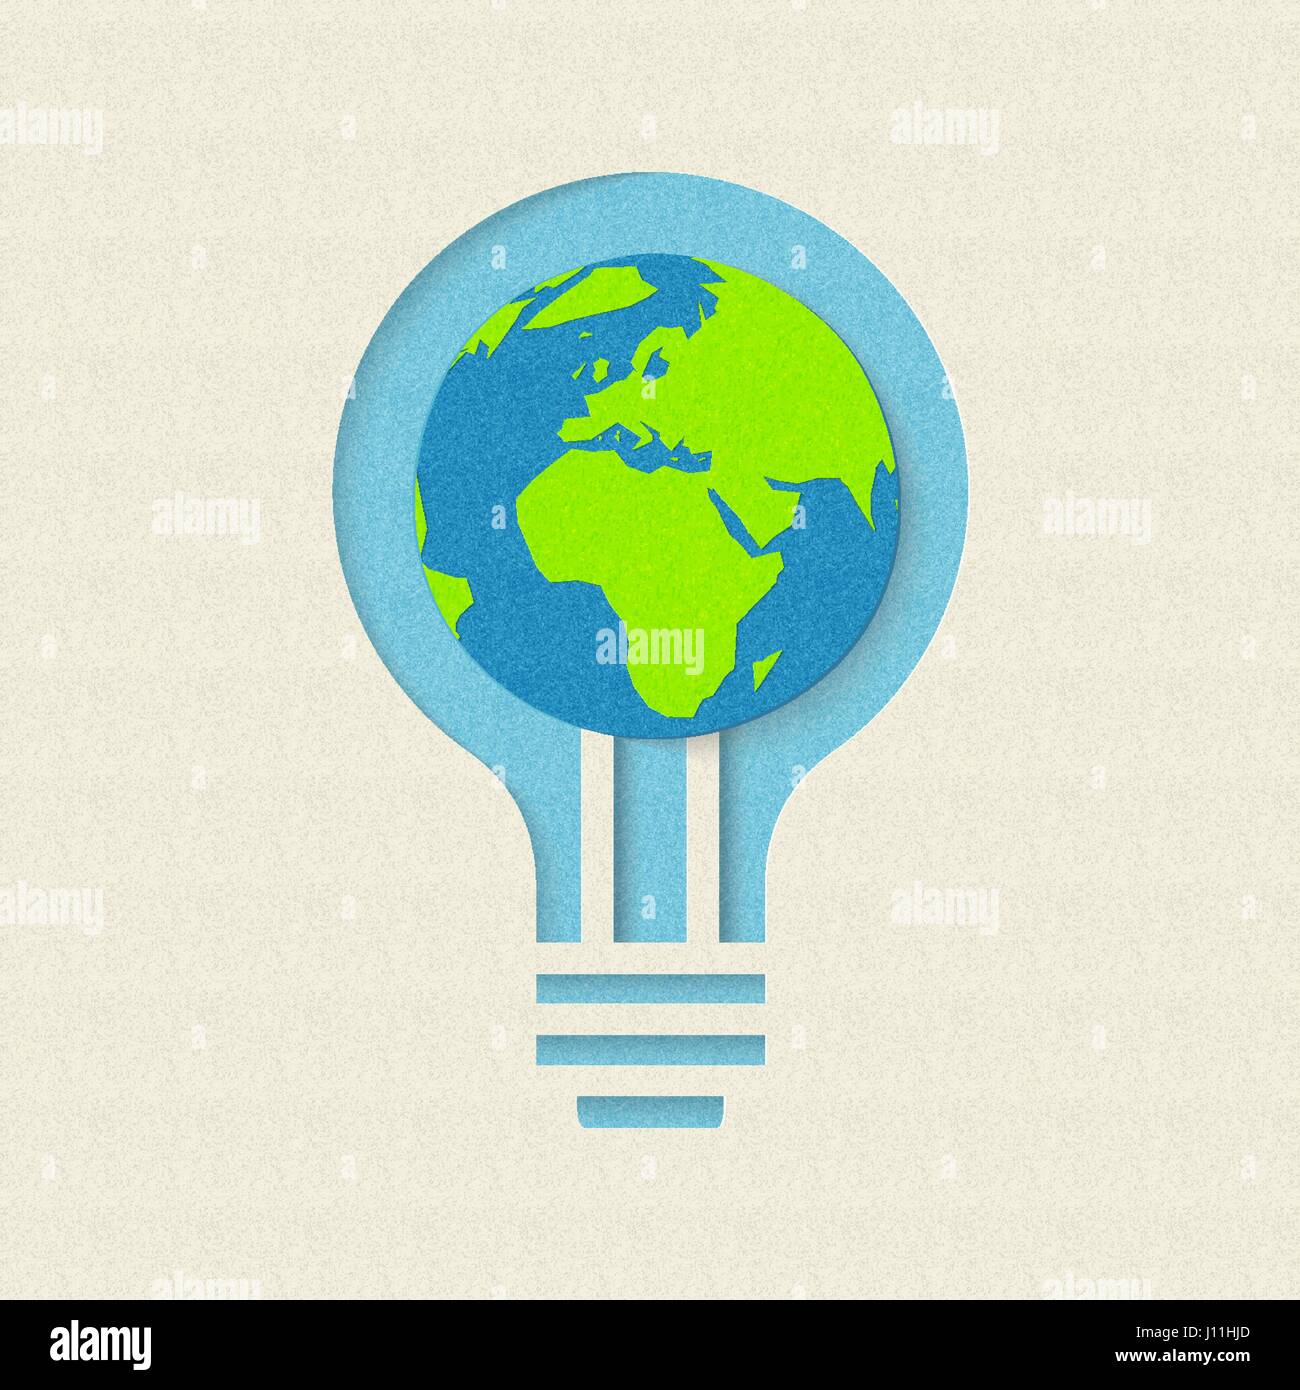 Le jour de la terre papier coupé concept pour la conservation et le recyclage de l'énergie verte. Illustration de soins mondiale de l'environnement. Vecteur EPS10. Illustration de Vecteur